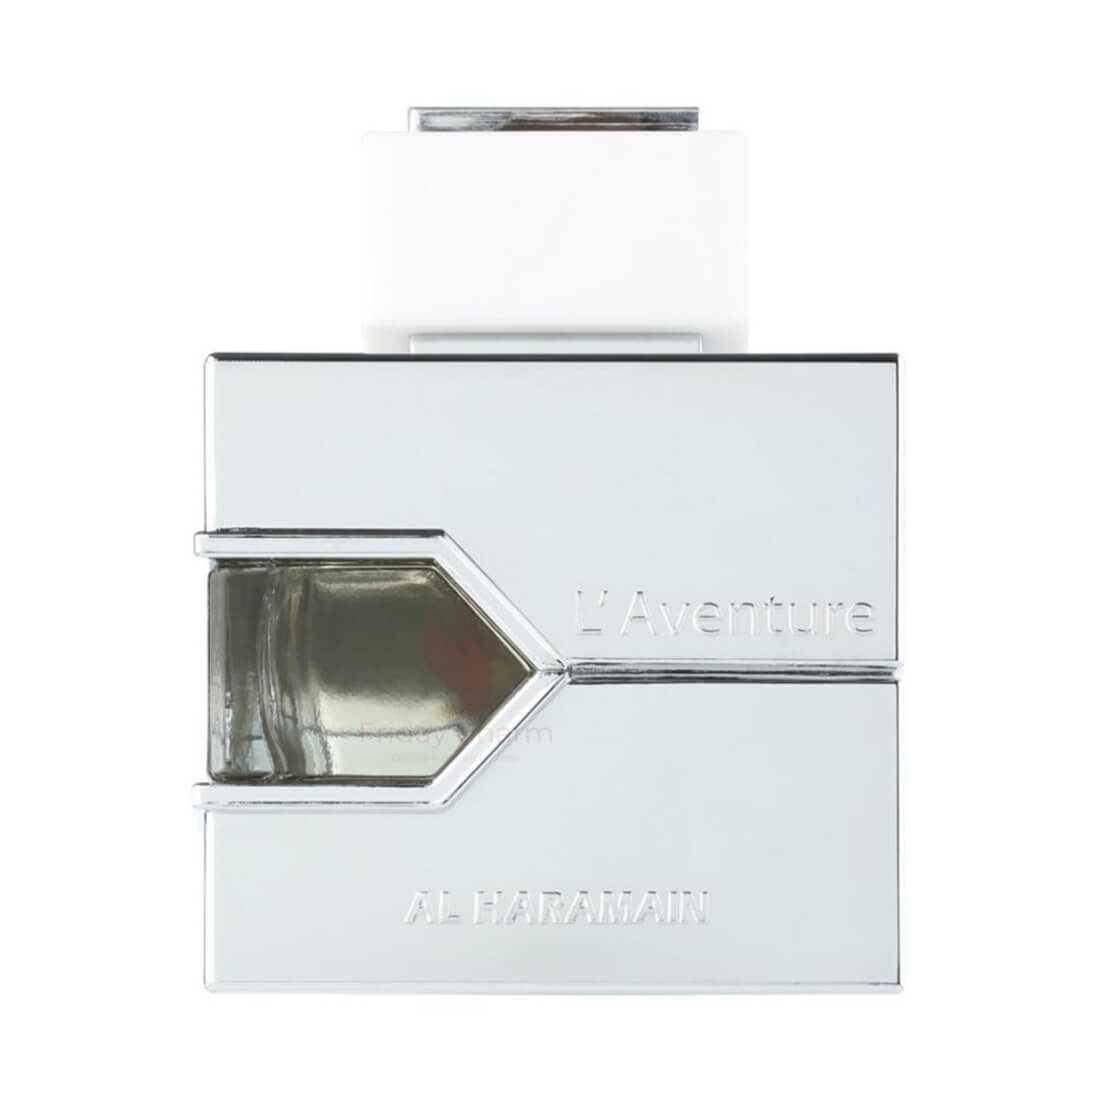 Al Haramain L'Aventure Blanche Eau De Perfume Spray - 100ml